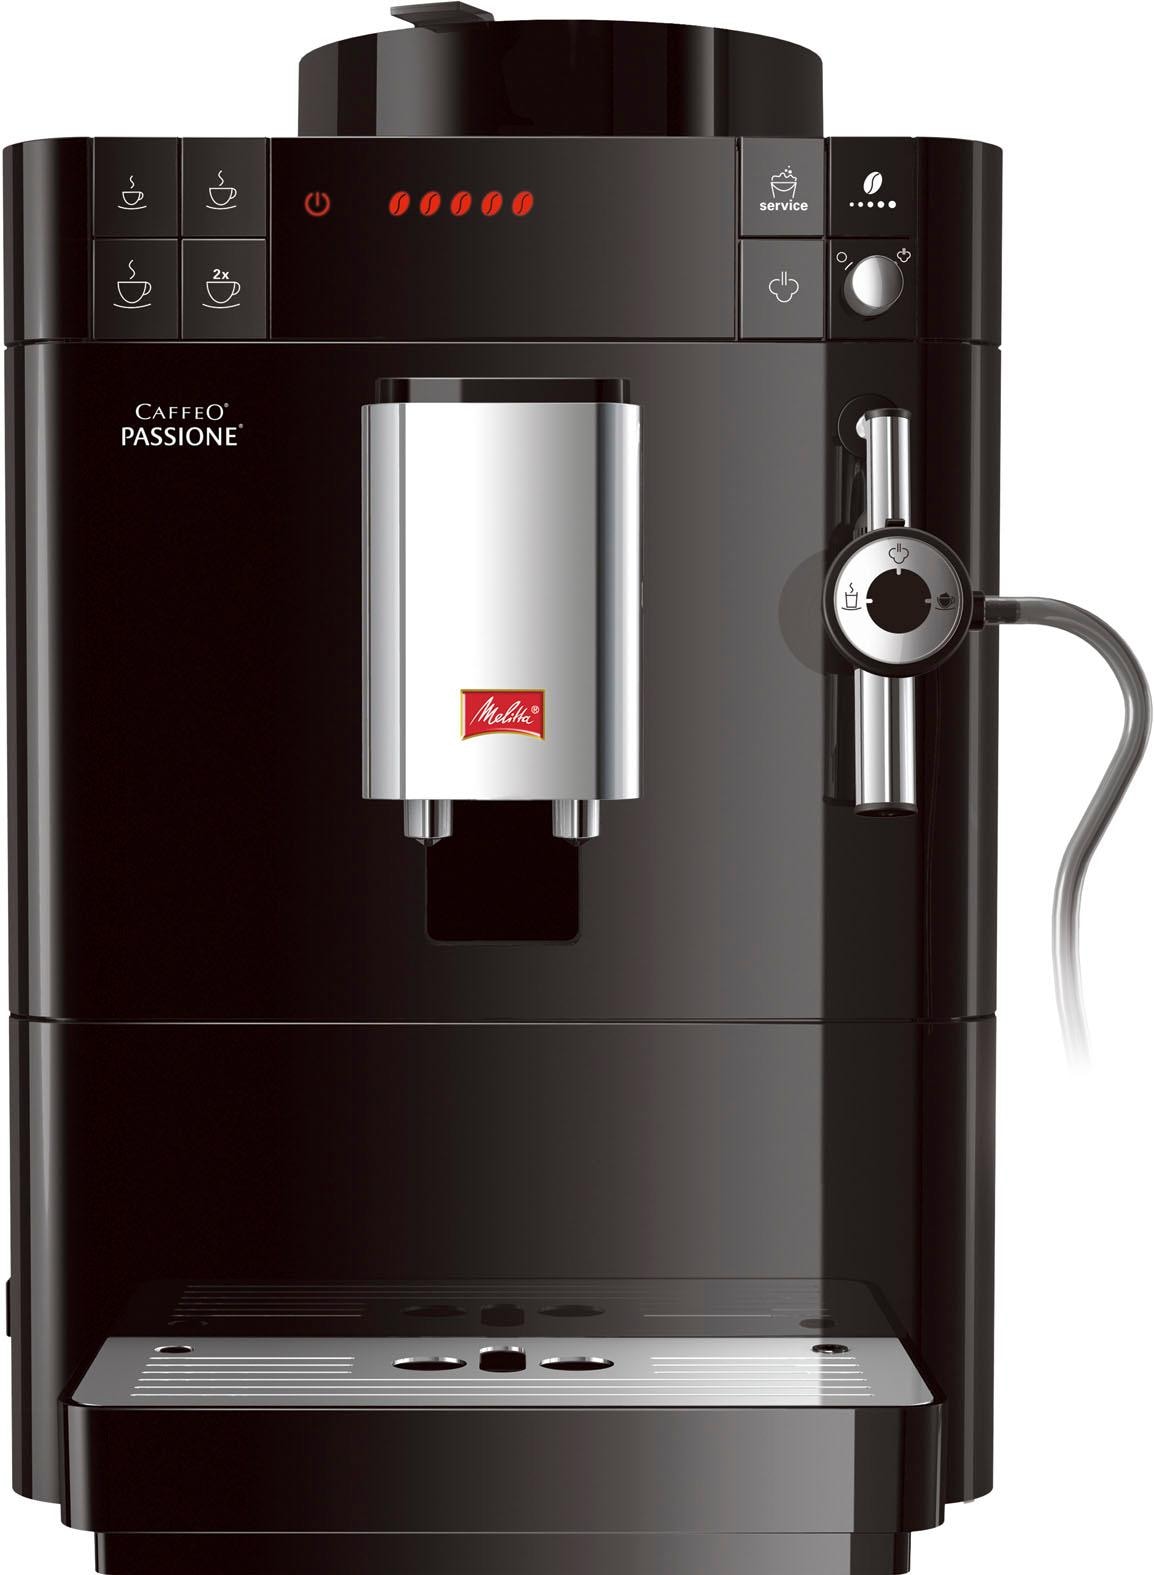 Vollendung Melitta Kaffeevollautomat »Passione® F53/0-102 für gemahlen, Garantie mit Entkalkung Tassengenau frisch & Service-Taste Reinigung schwarz«, XXL 3 Jahren